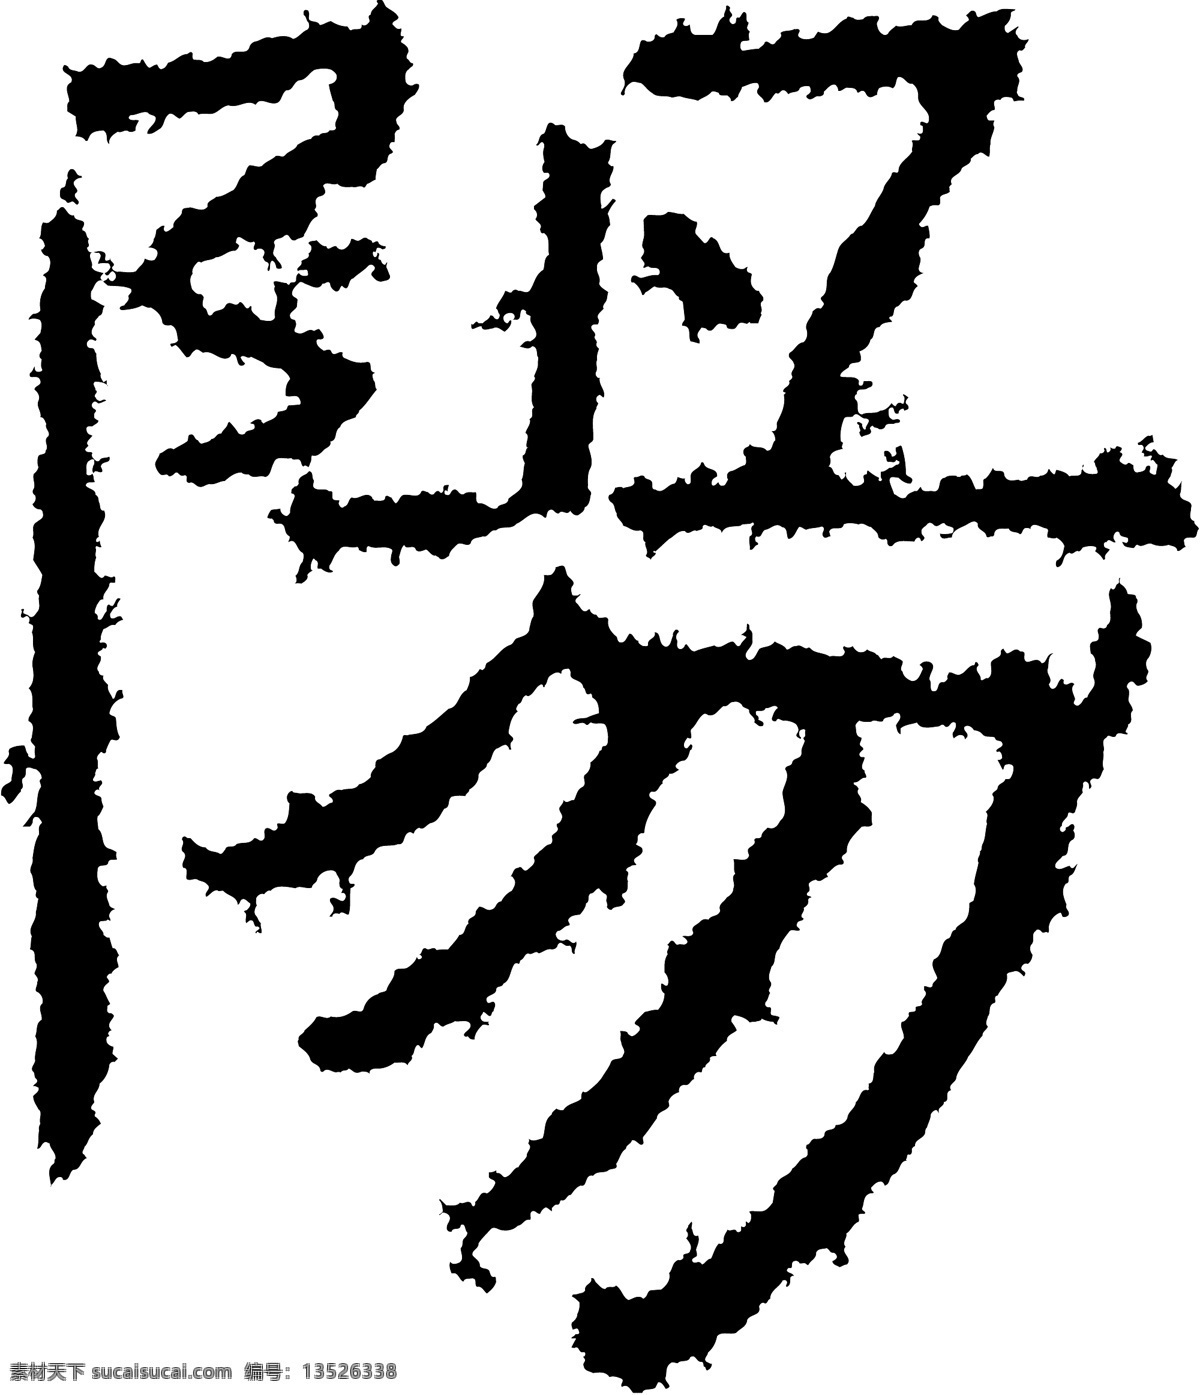 陽阳 书法 汉字 十二画 传统艺术 矢量 格式 ai格式 设计素材 十二画字 瀚墨宝典 矢量图库 白色